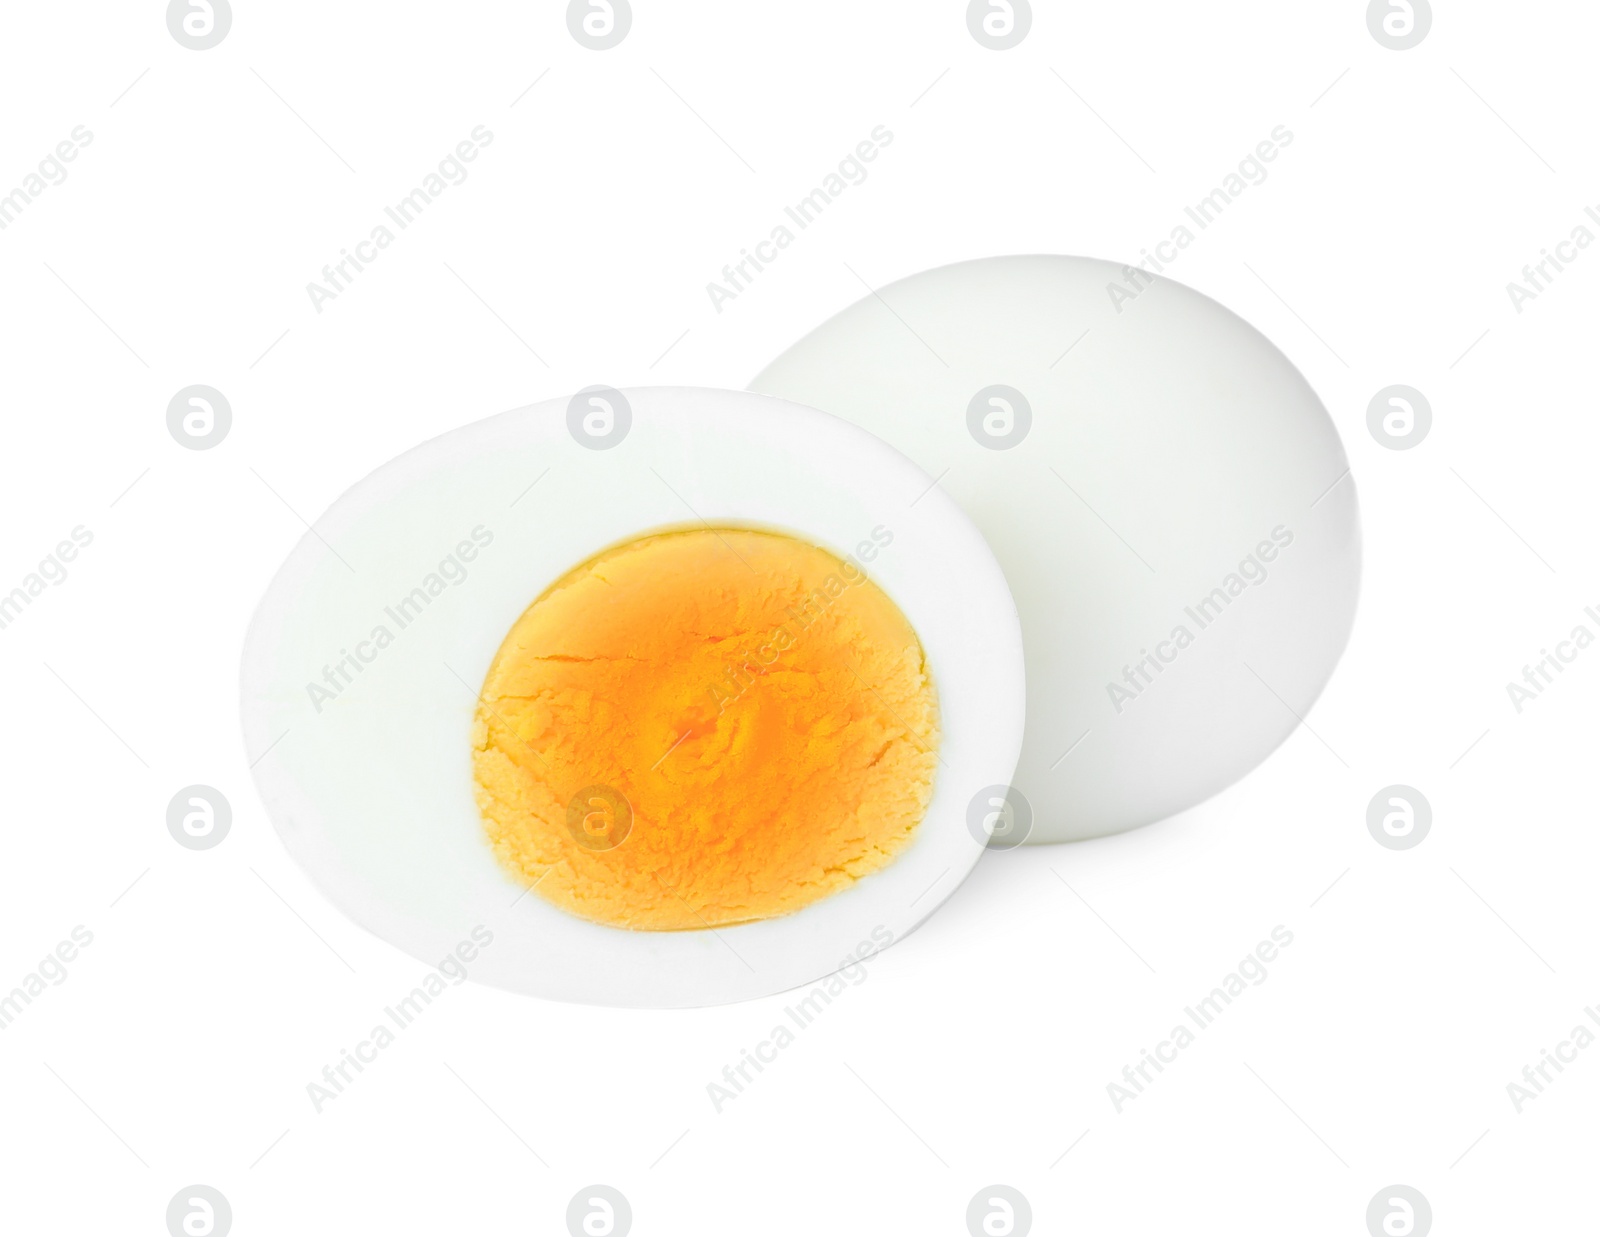 Photo of Fresh peeled hard boiled eggs on white background